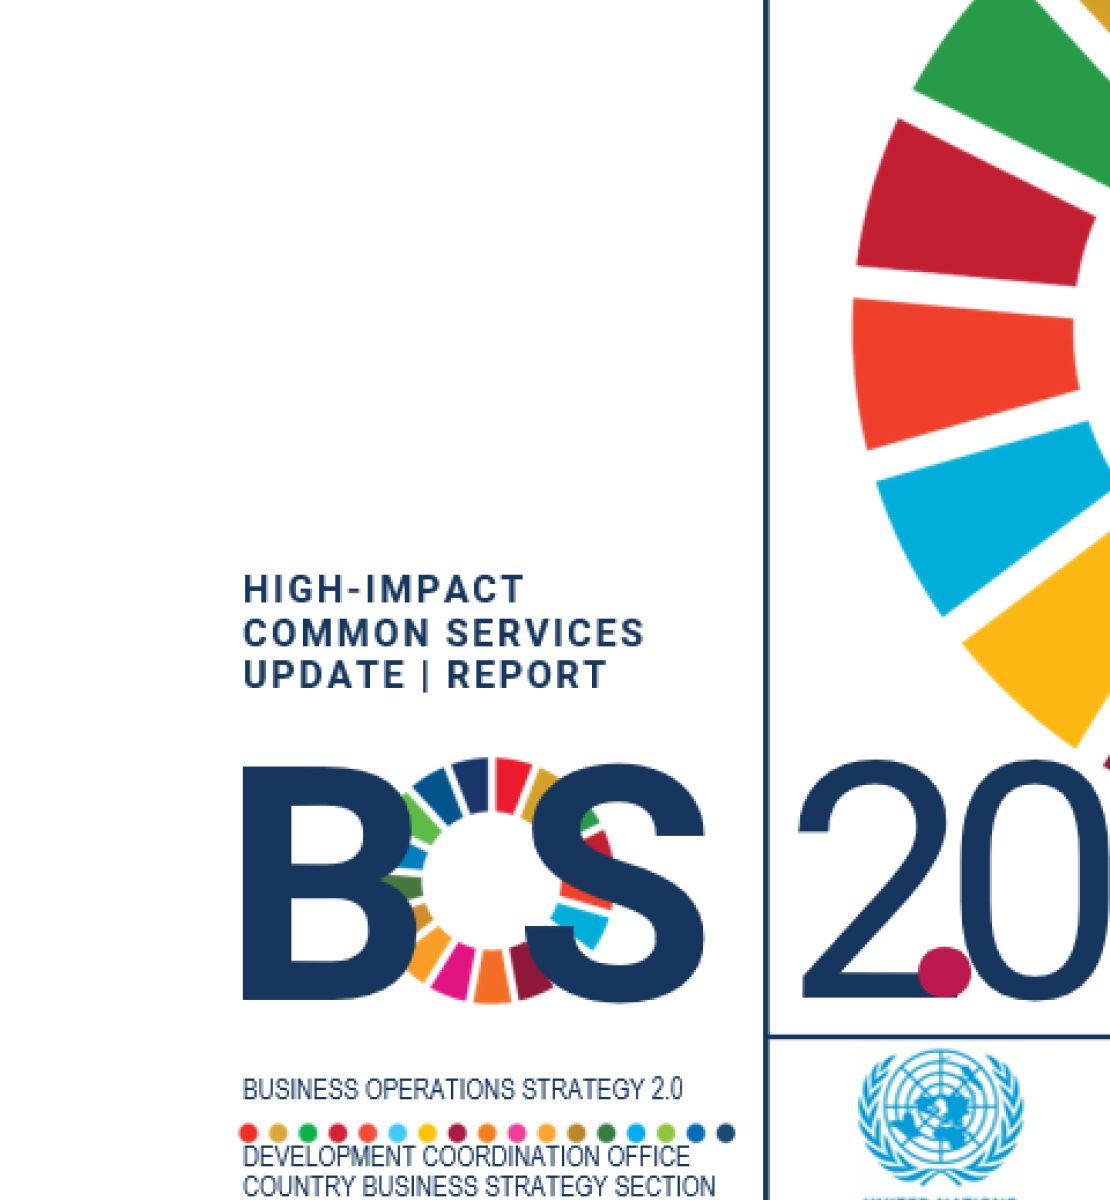 غلاف الخدمات المشتركة شديدة التأثير مع عجلة أهداف التنمية المستدامة وشعار مجموعة الأمم المتحدة للتنمية المستدامة